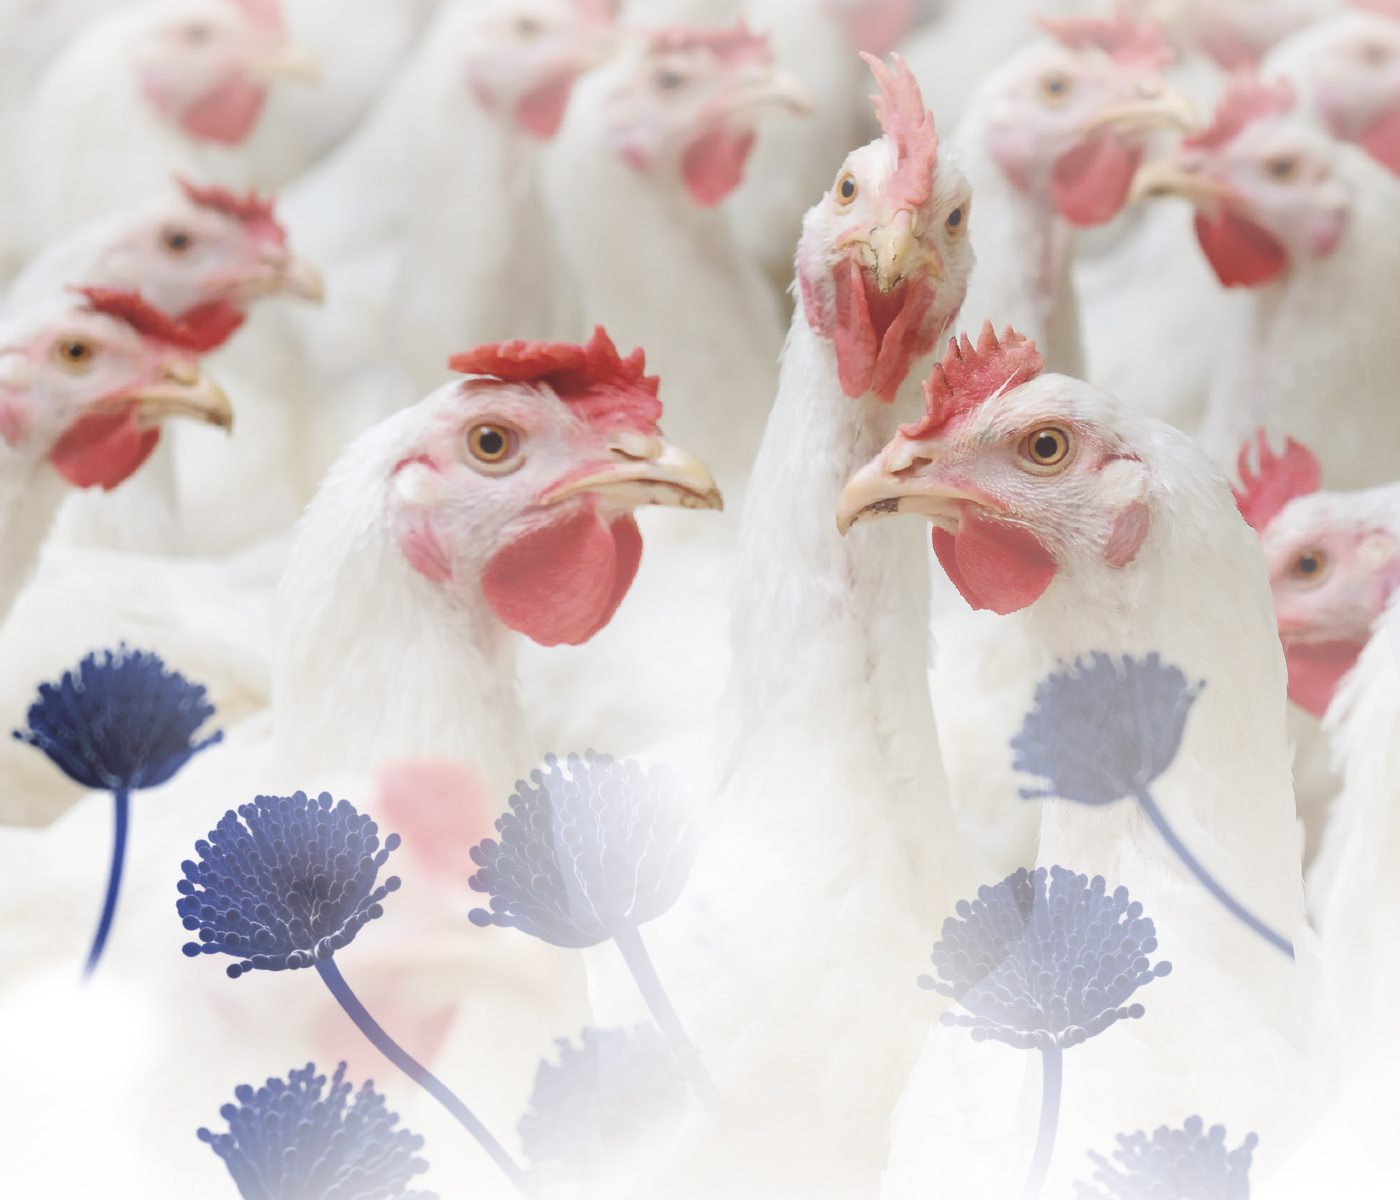 Trascendencia de las micotoxinas en la producción de pollos de engorde